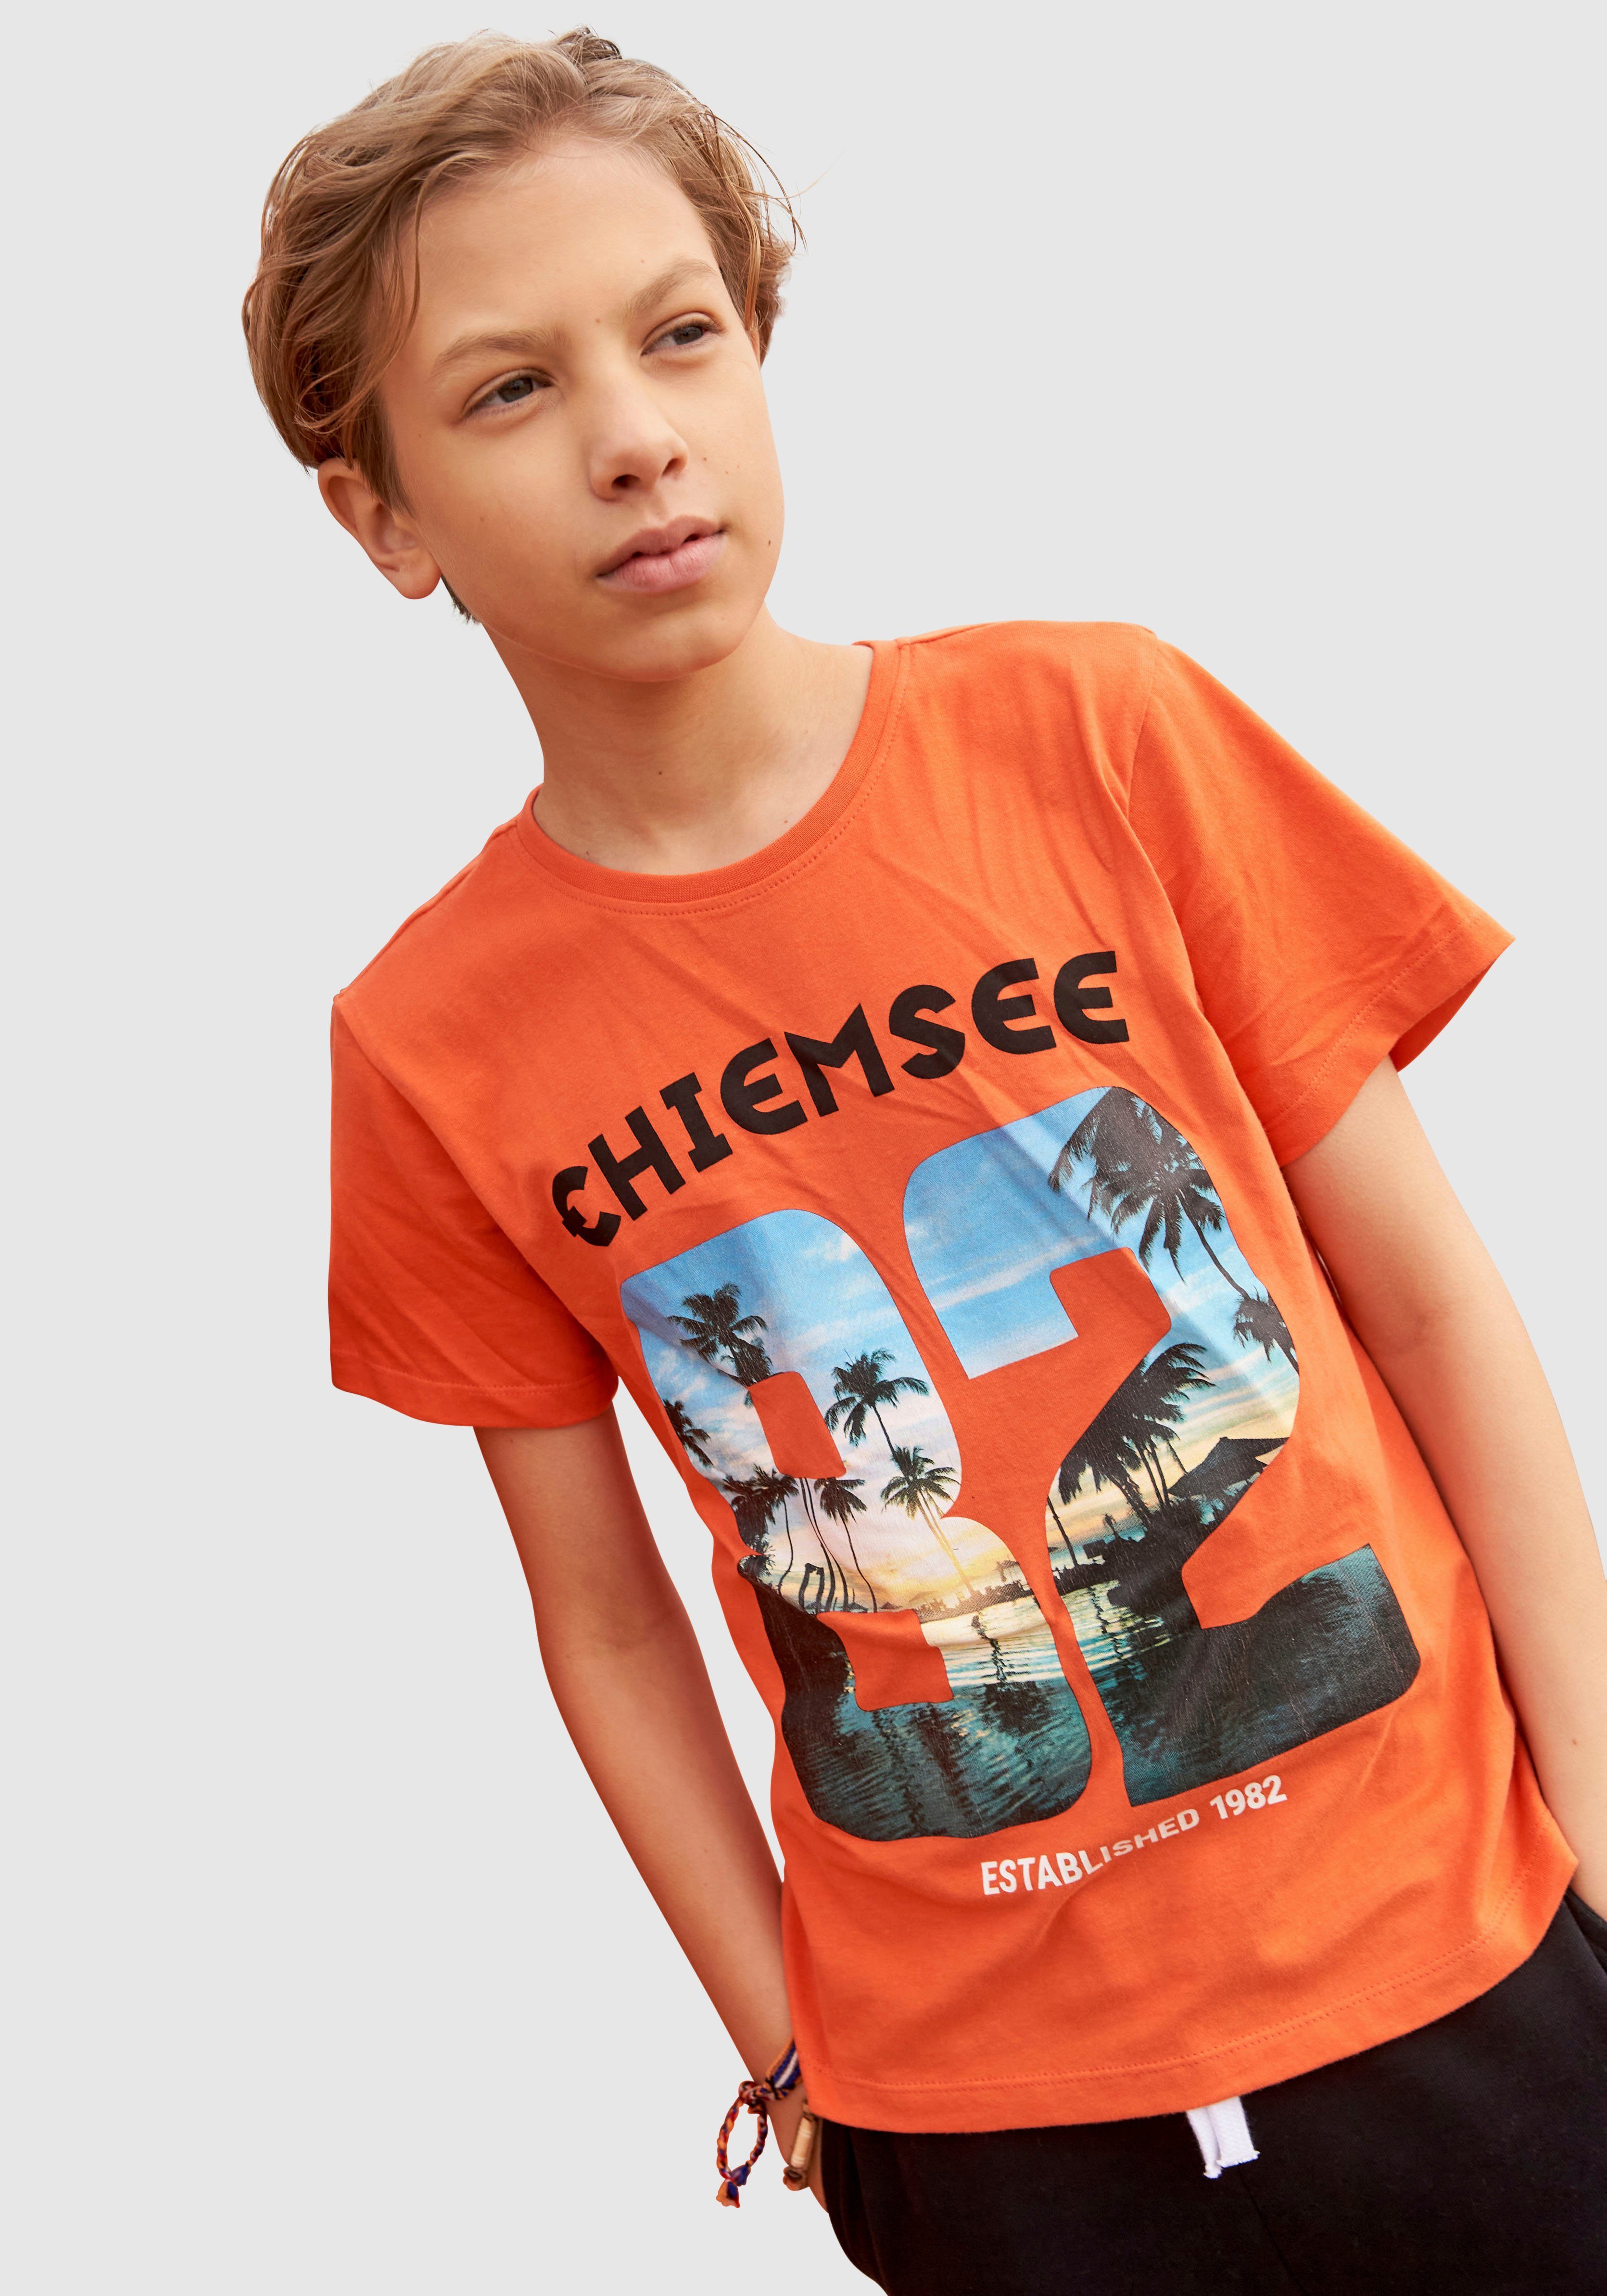 Chiemsee T-Shirt »No. 82« online kaufen | OTTO